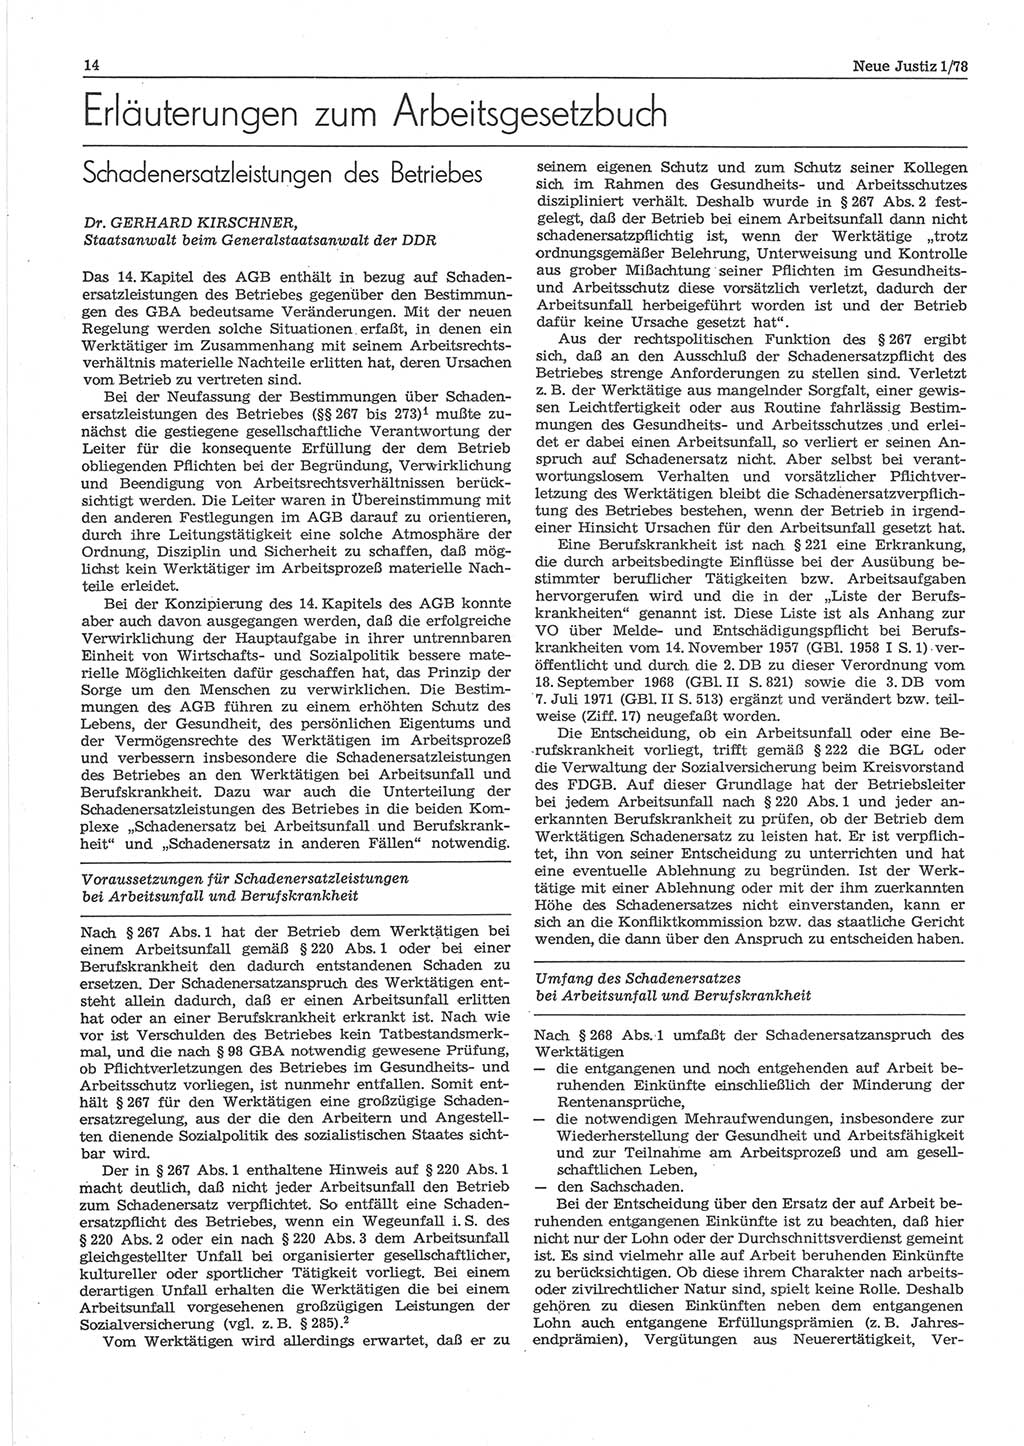 Neue Justiz (NJ), Zeitschrift für sozialistisches Recht und Gesetzlichkeit [Deutsche Demokratische Republik (DDR)], 32. Jahrgang 1978, Seite 14 (NJ DDR 1978, S. 14)